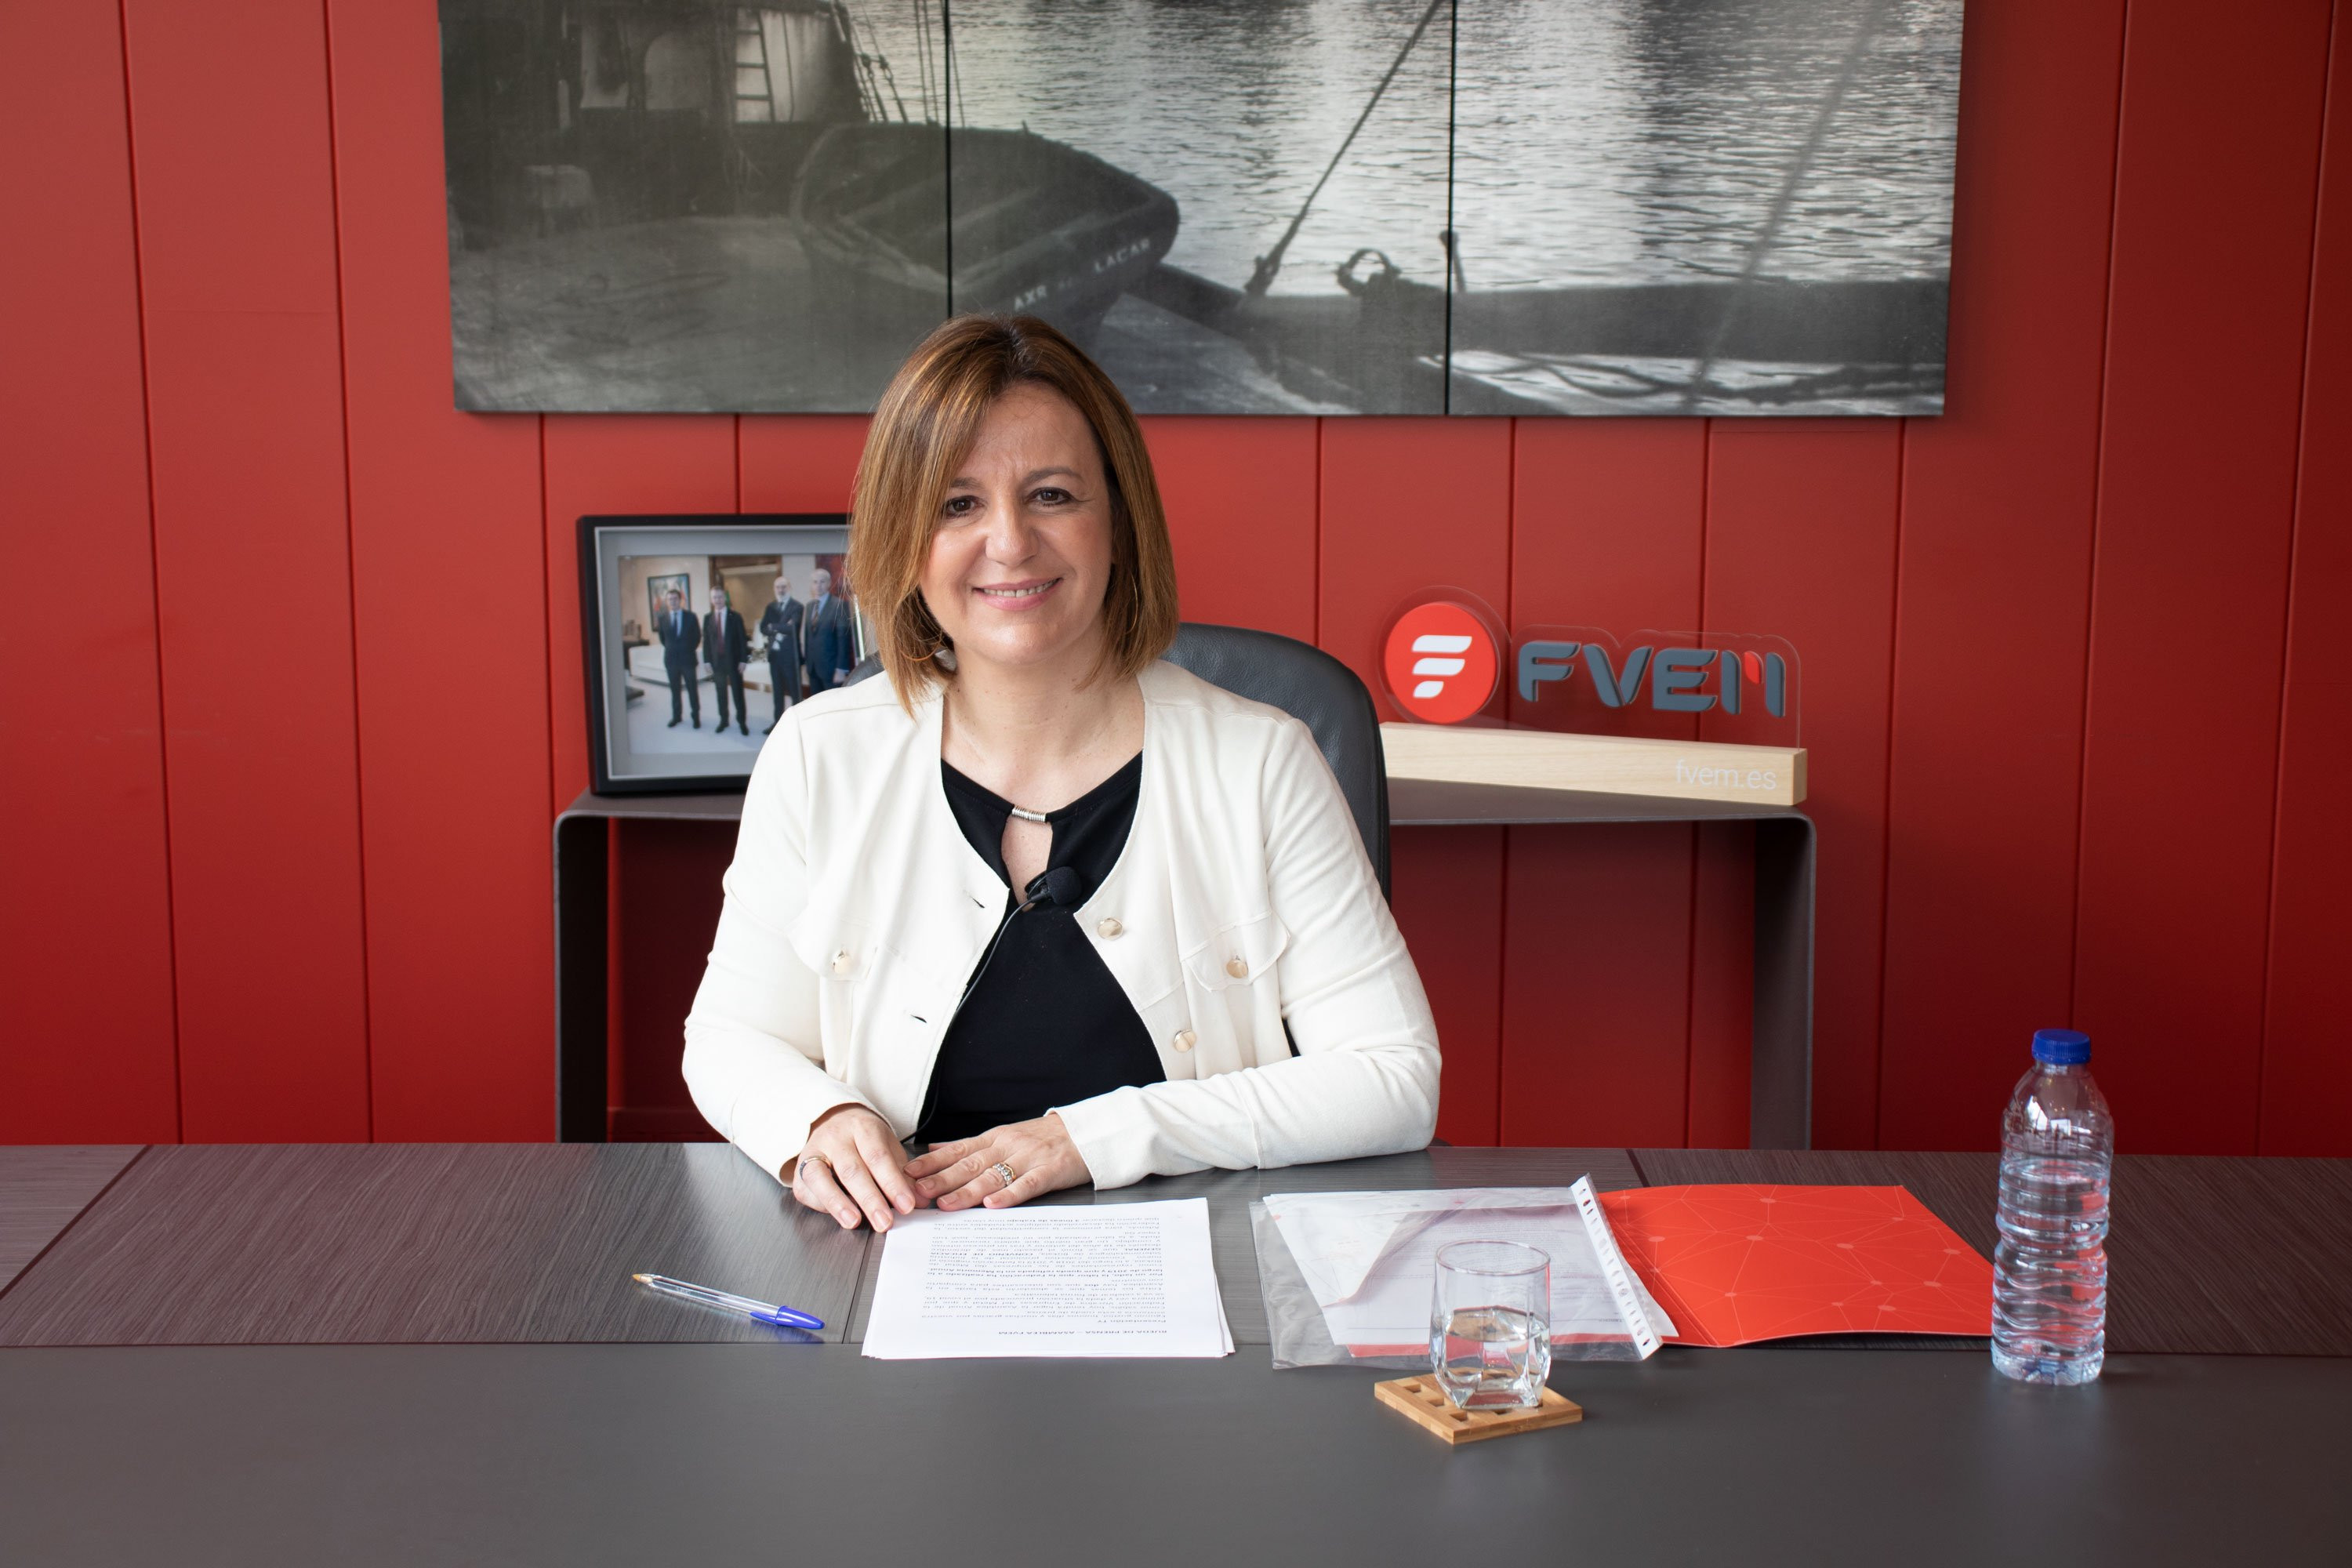 La presidenta de FVEM, Tamara Yaguë, destaca la capacidad de resiliencia del sector industrial. /CV